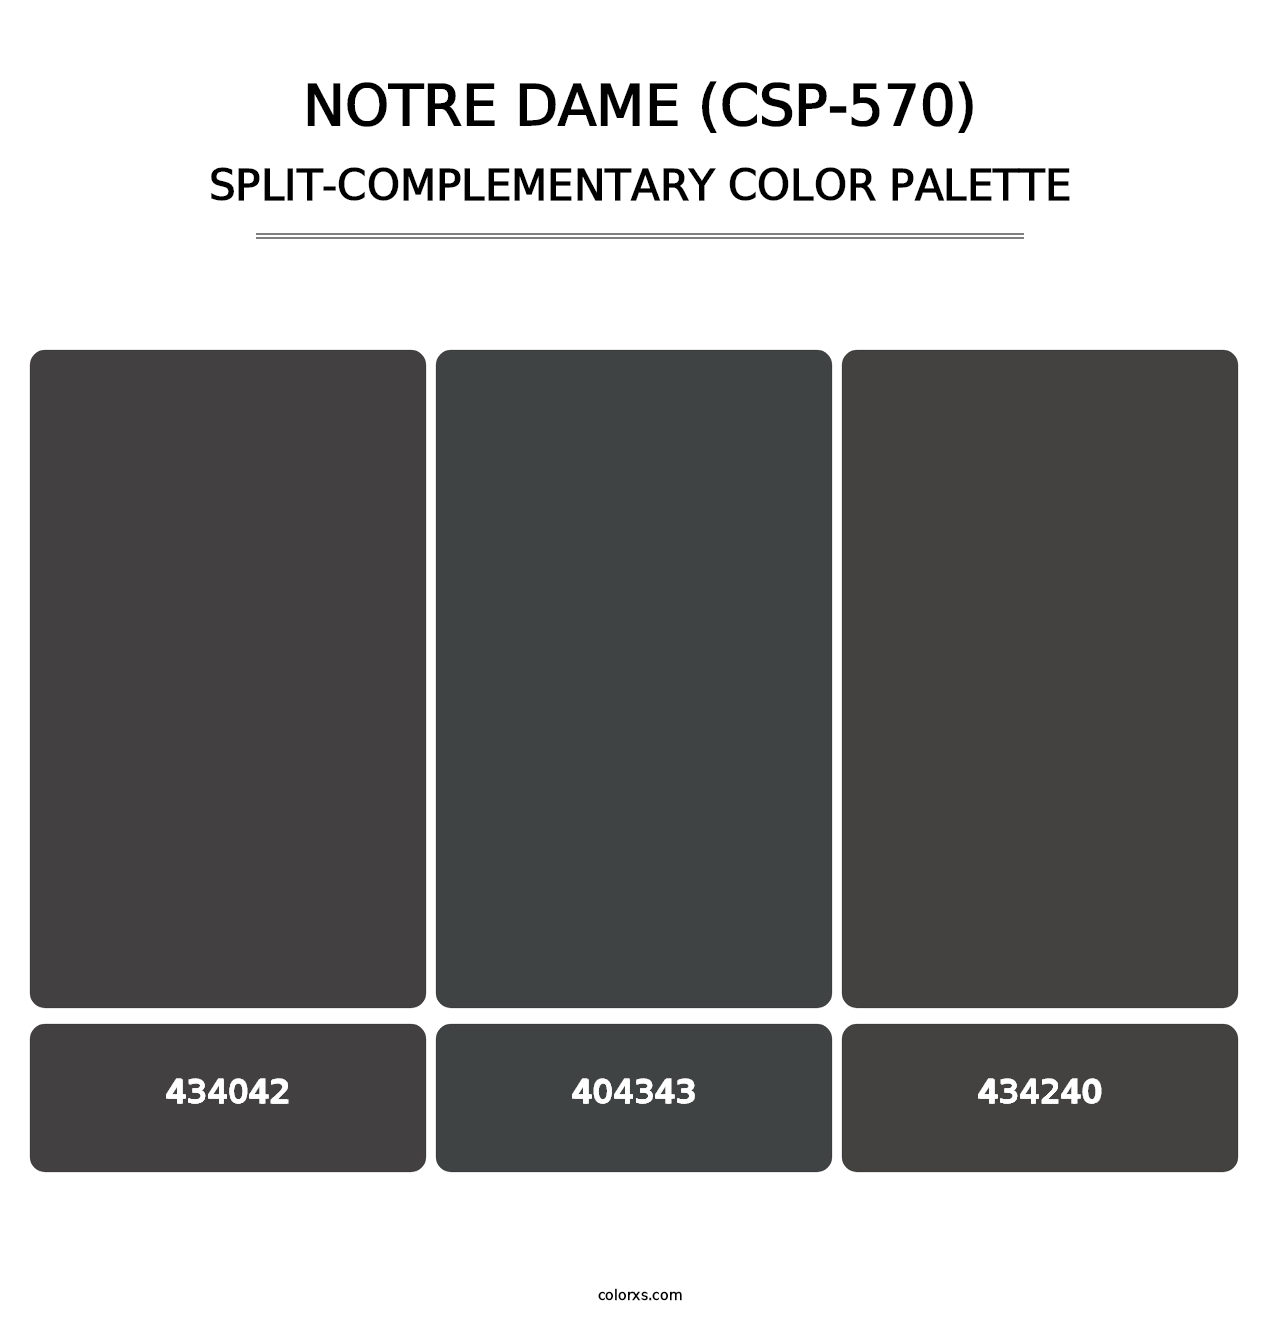 Notre Dame (CSP-570) - Split-Complementary Color Palette